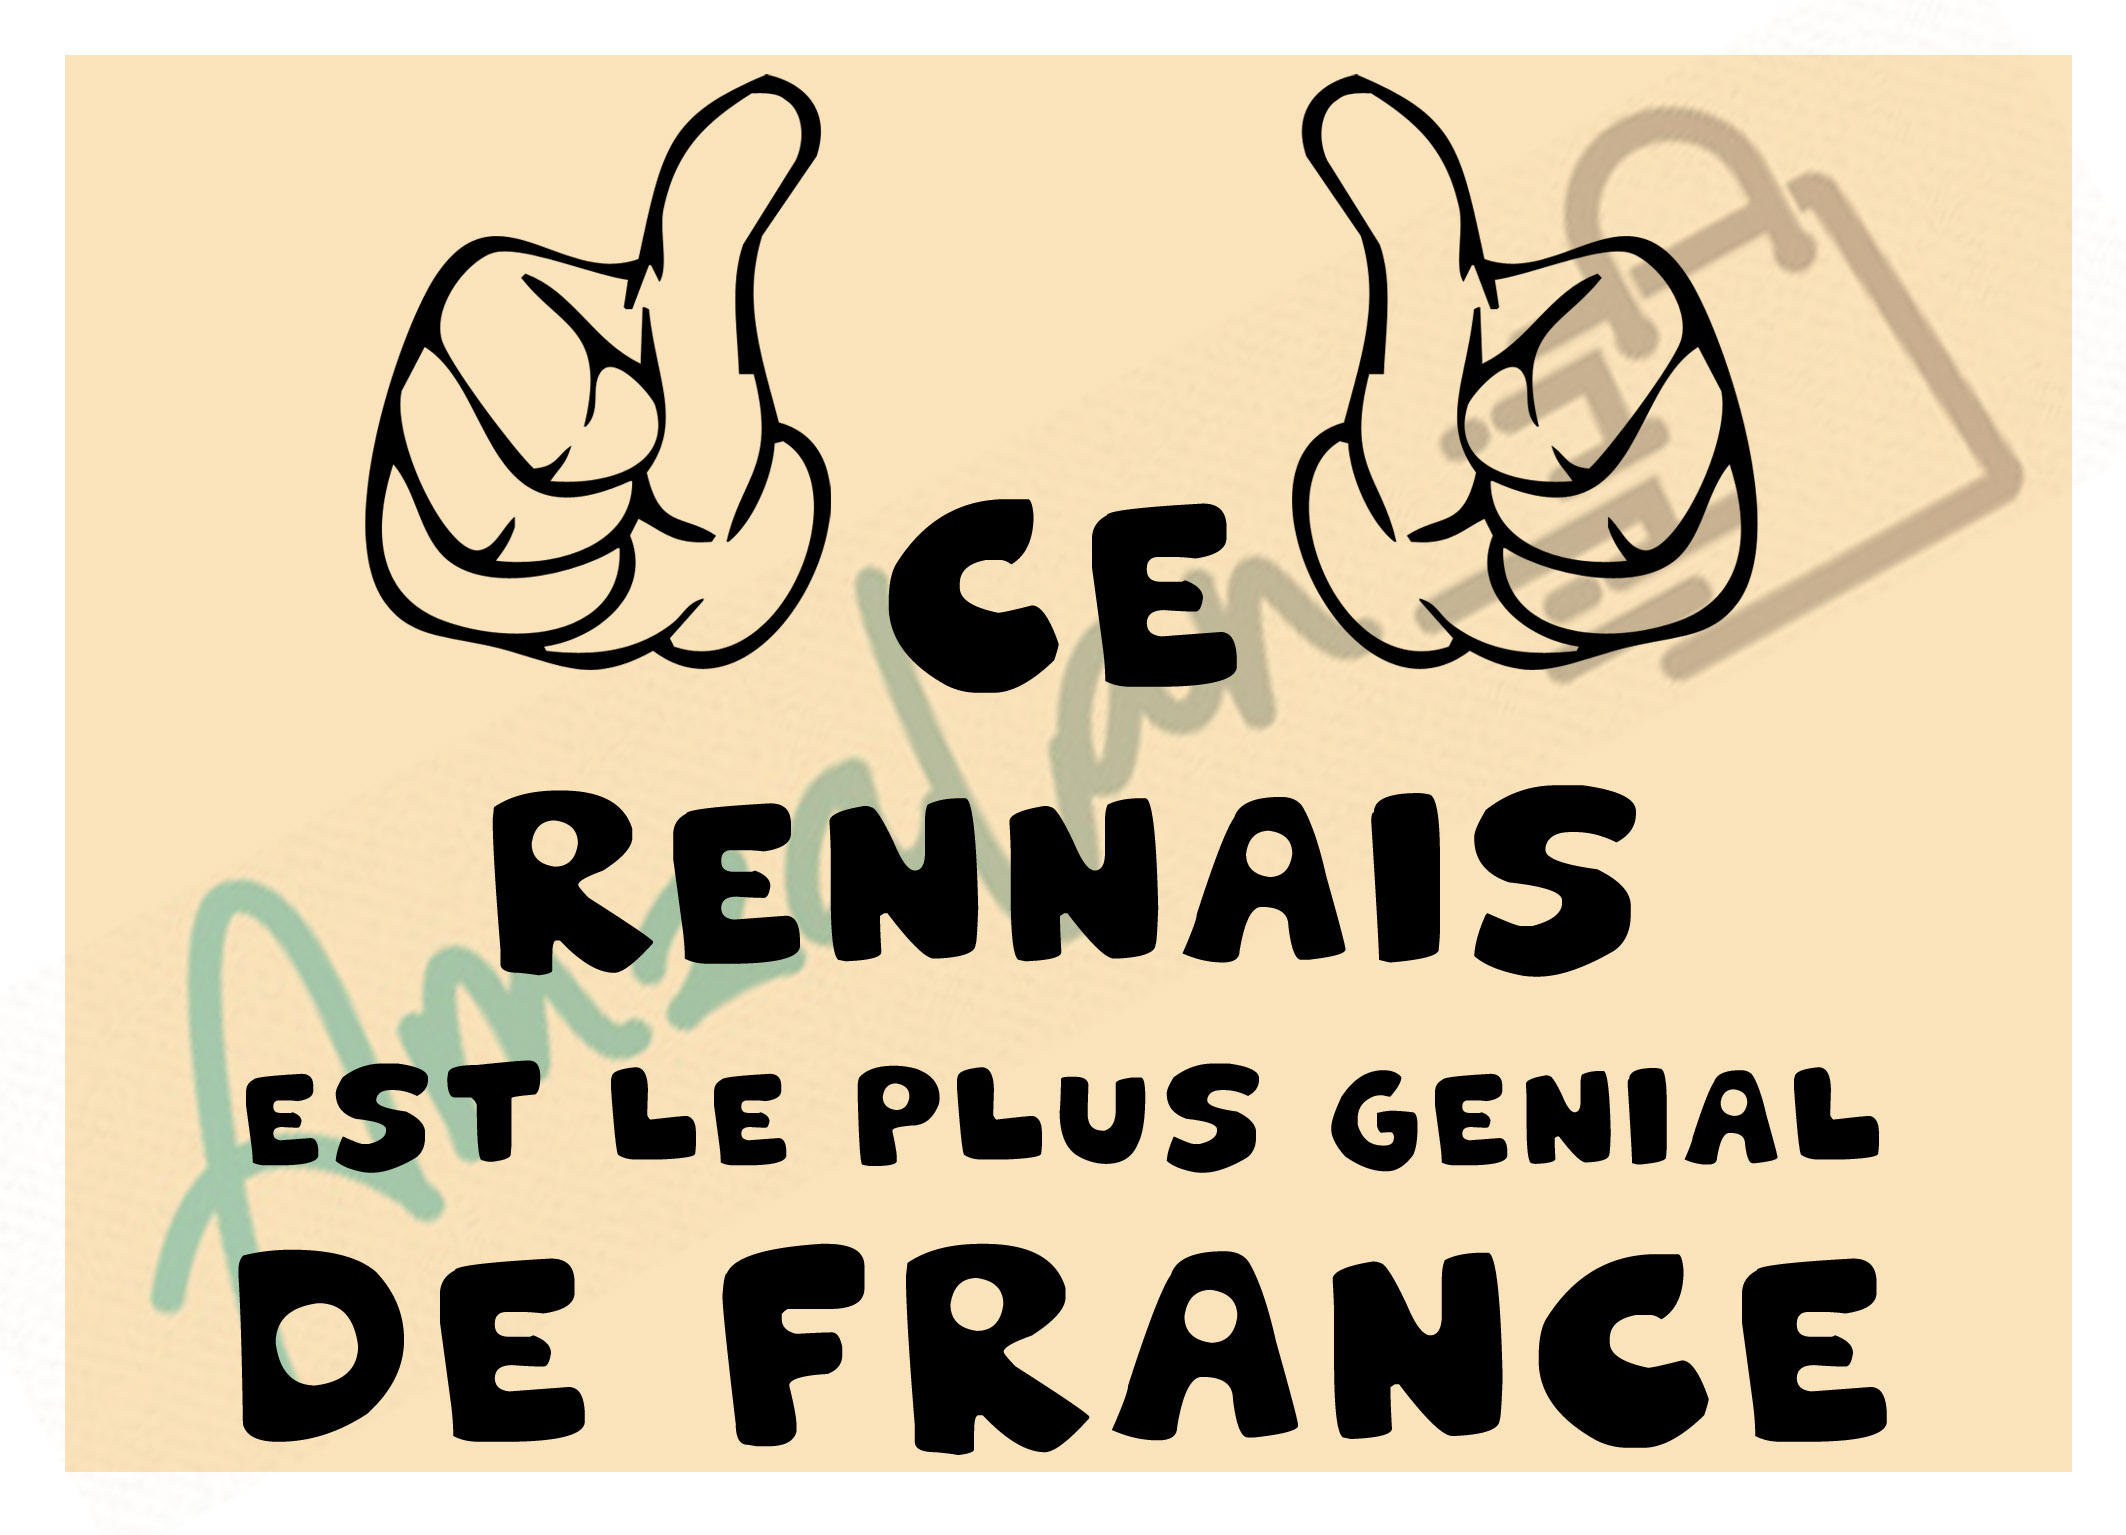 Ce Rennais est le + génial de France fond beige